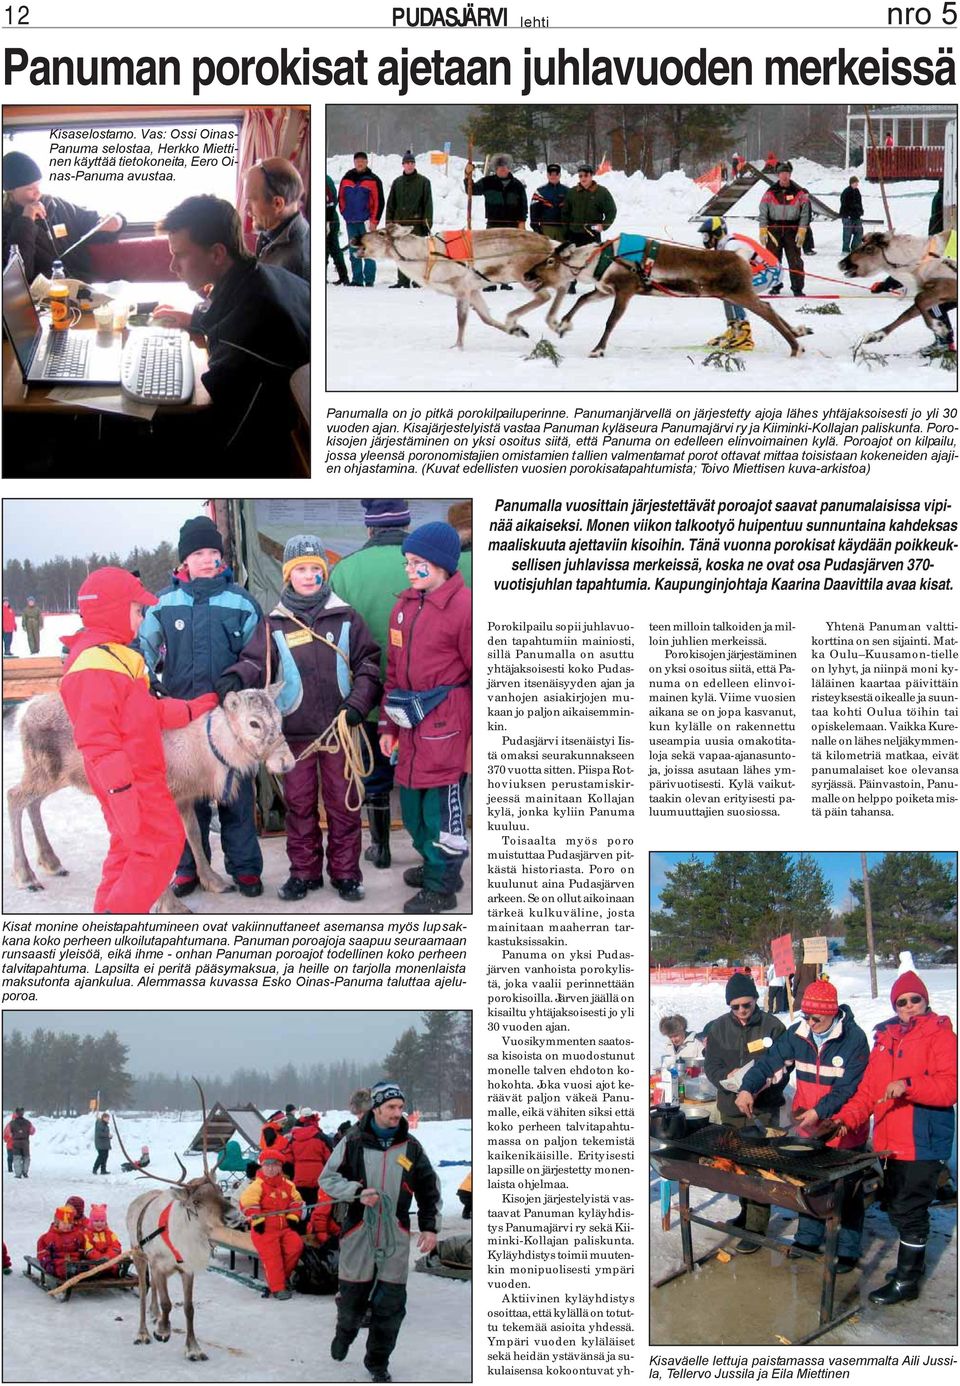 Kisajärjestelyistä vastaa Panuman kyläseura Panumajärvi ry ja Kiiminki-Kollajan paliskunta. Porokisojen järjestäminen on yksi osoitus siitä, että Panuma on edelleen elinvoimainen kylä.